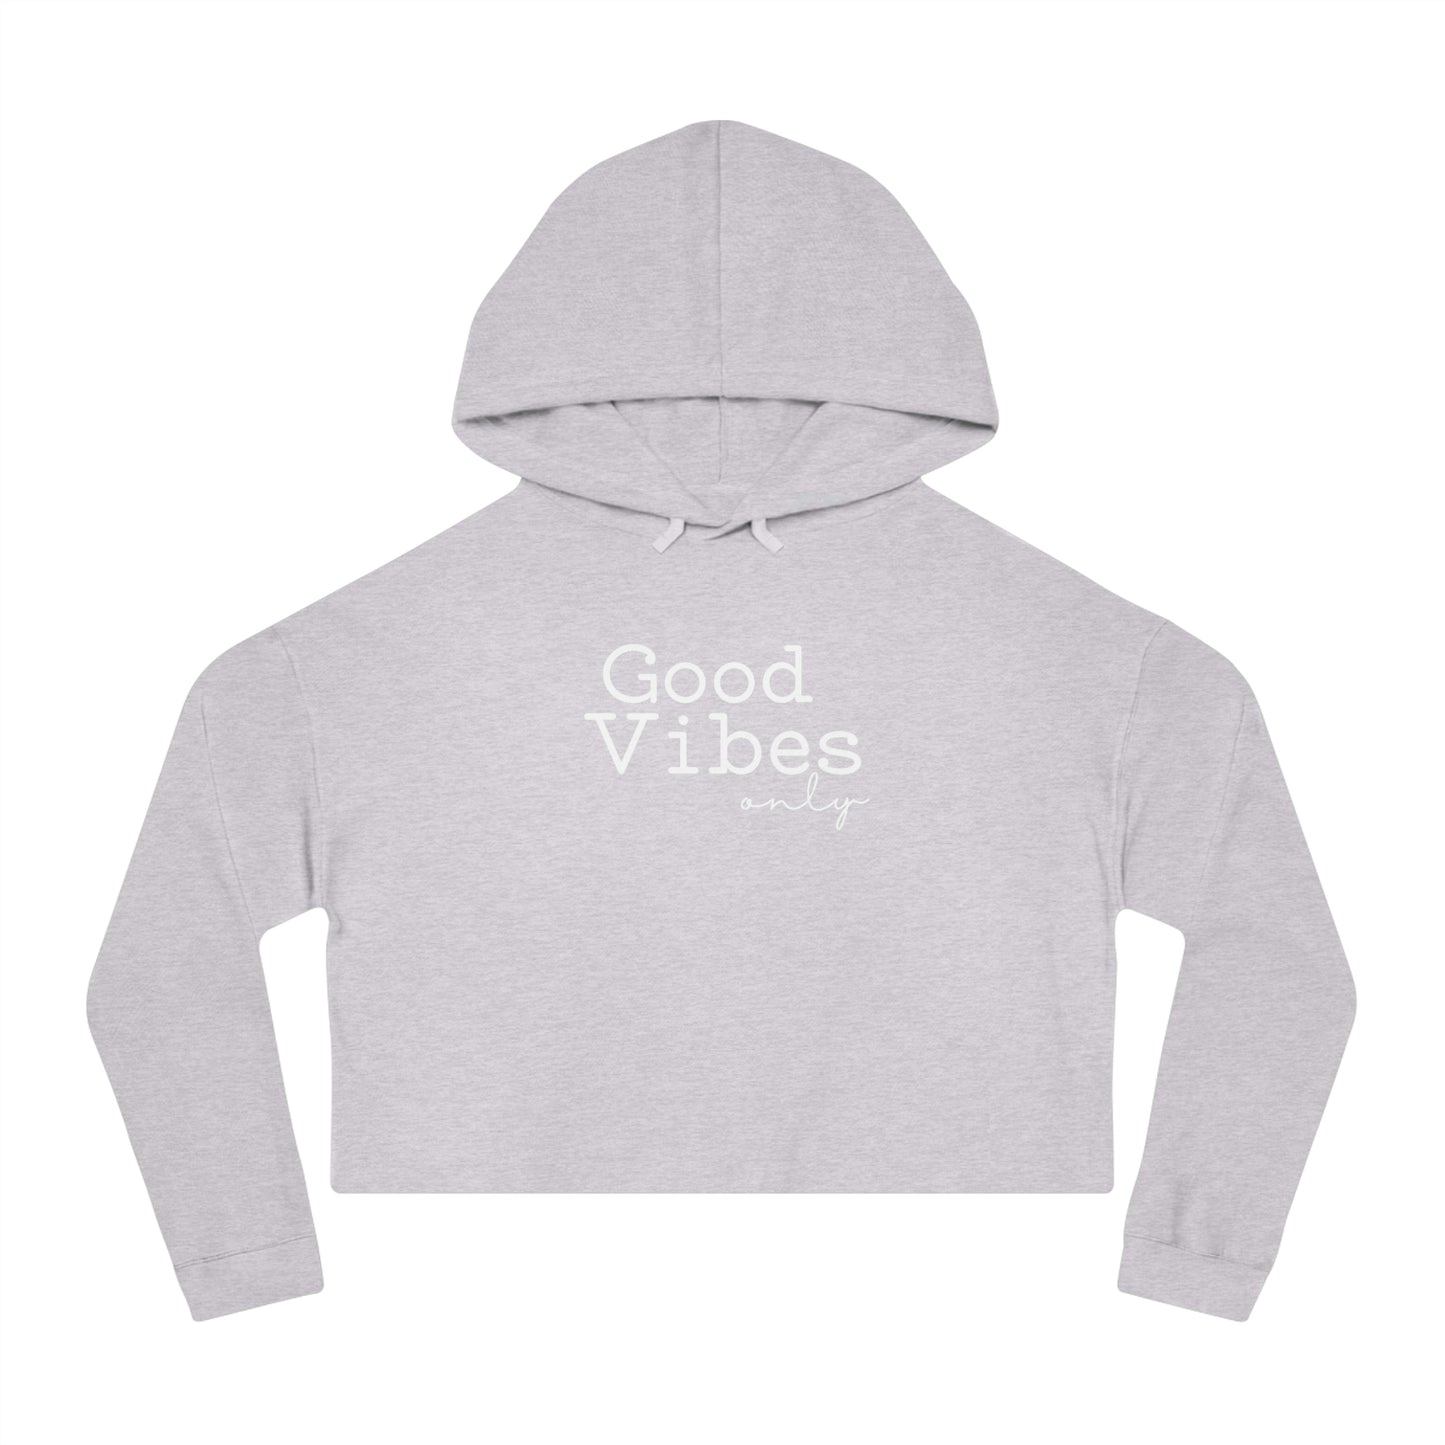 Good Vibes Only Hoodie Sweatshirt